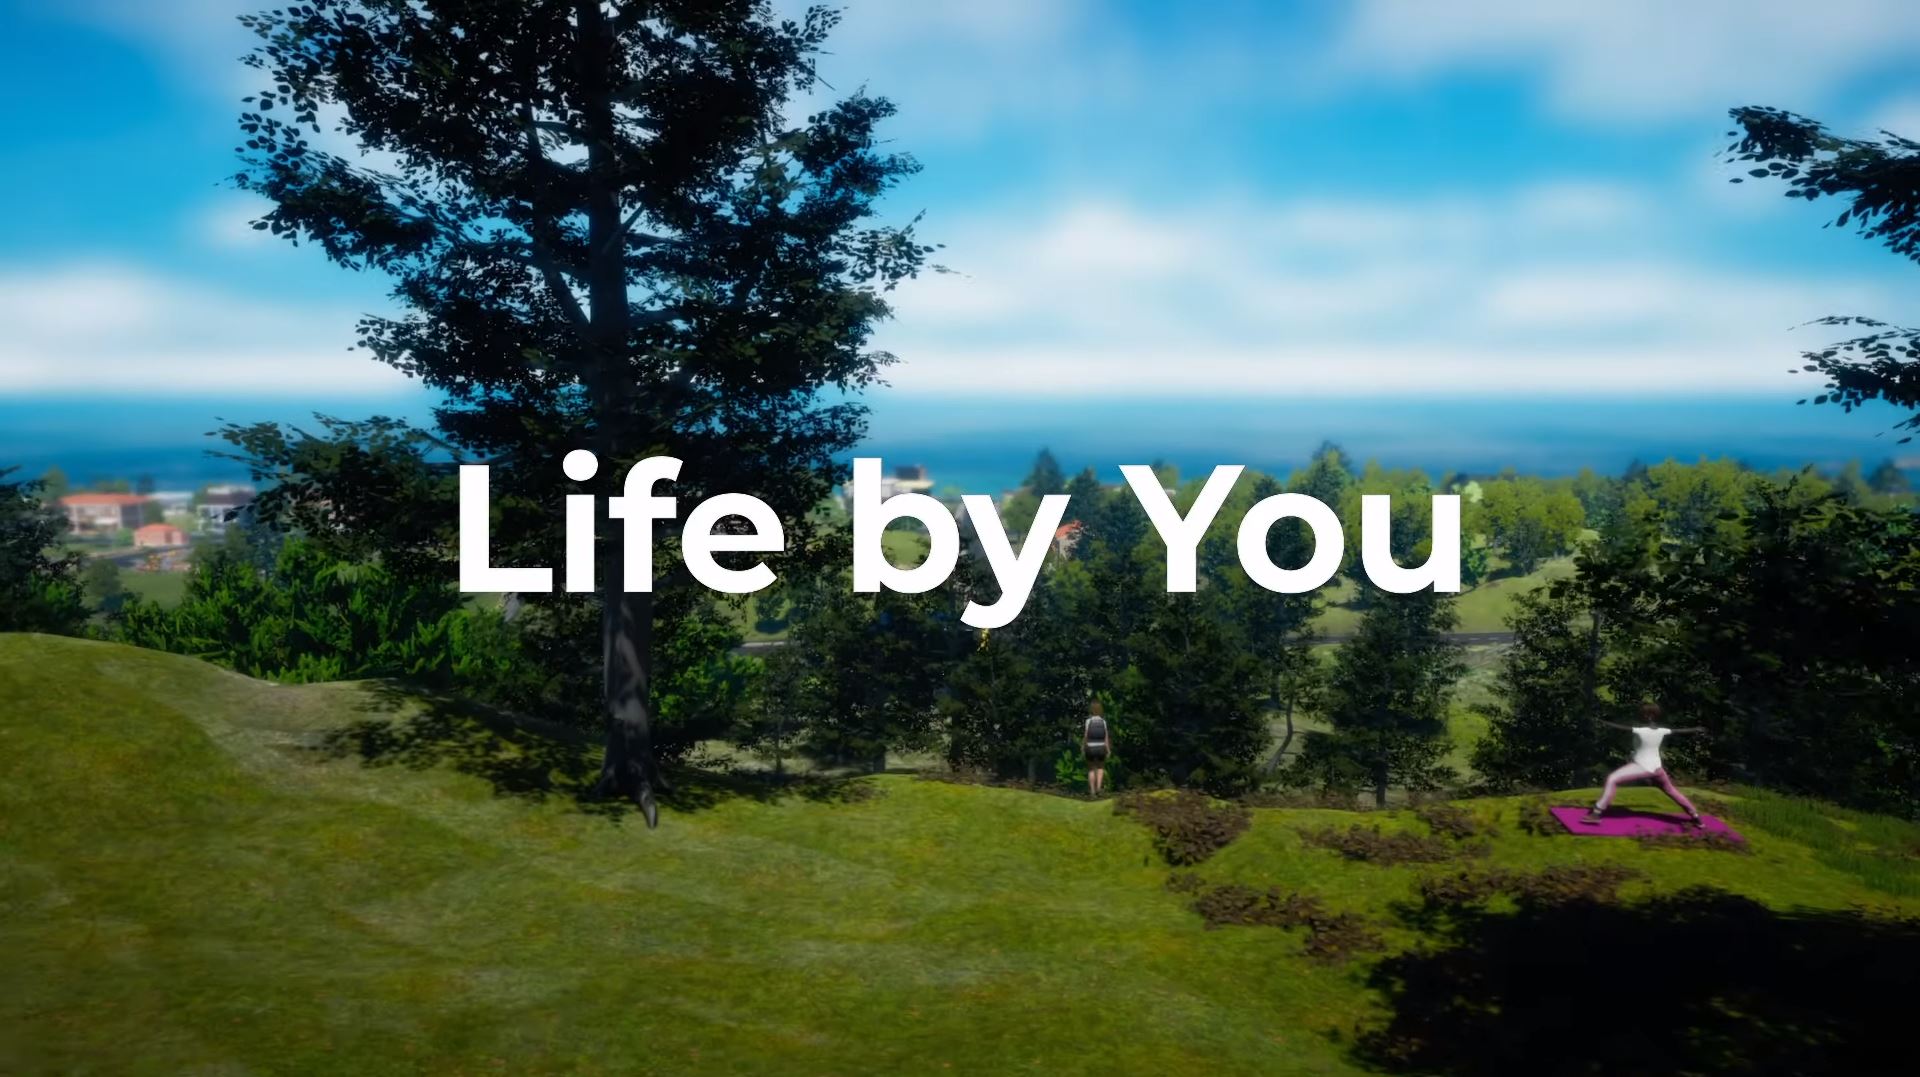 Клон The Sims всё же не увидит свет: Life By You закрыли спустя 5 лет разработки